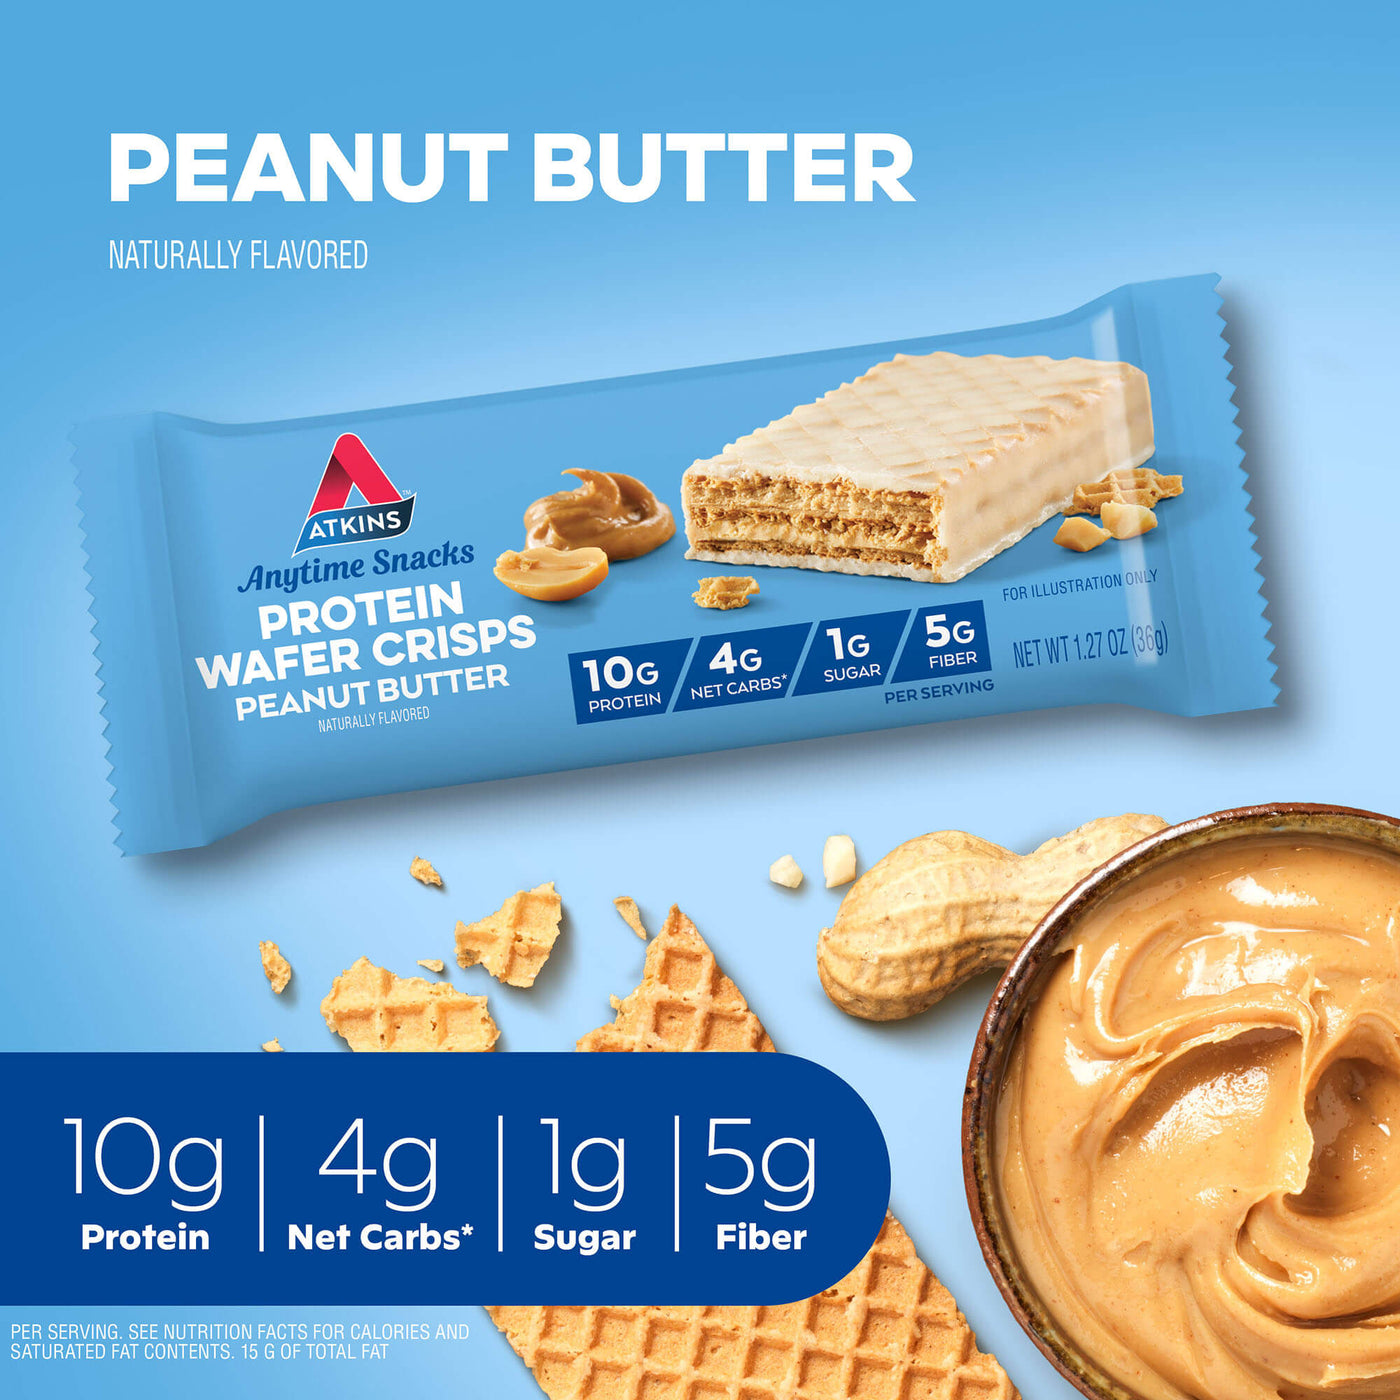 Peanut Butter Wafer Crisps-10g protein, 4g net carbs, 1g sugar, 5g fiber